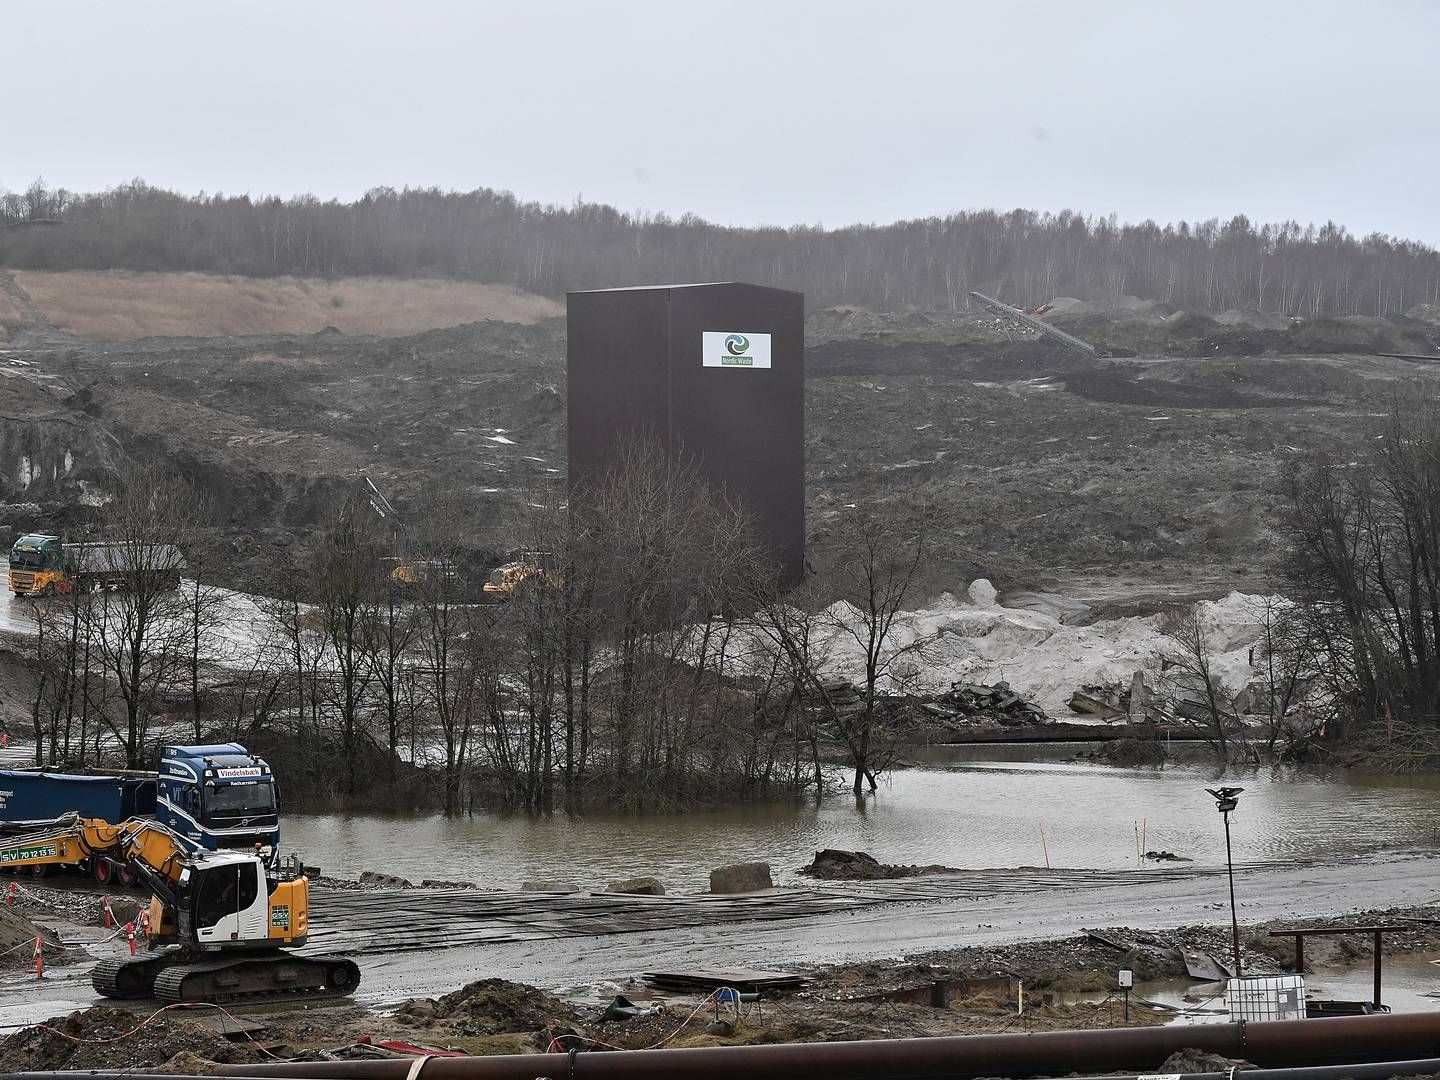 Jordskredet med tre mio. kubikmeter forurenet jord på Nordic Wastes arealer ved byen Ølst syd for Randers, har sendt det USTC-ejede selskab i konkurs. | Foto: Ernst van Norde